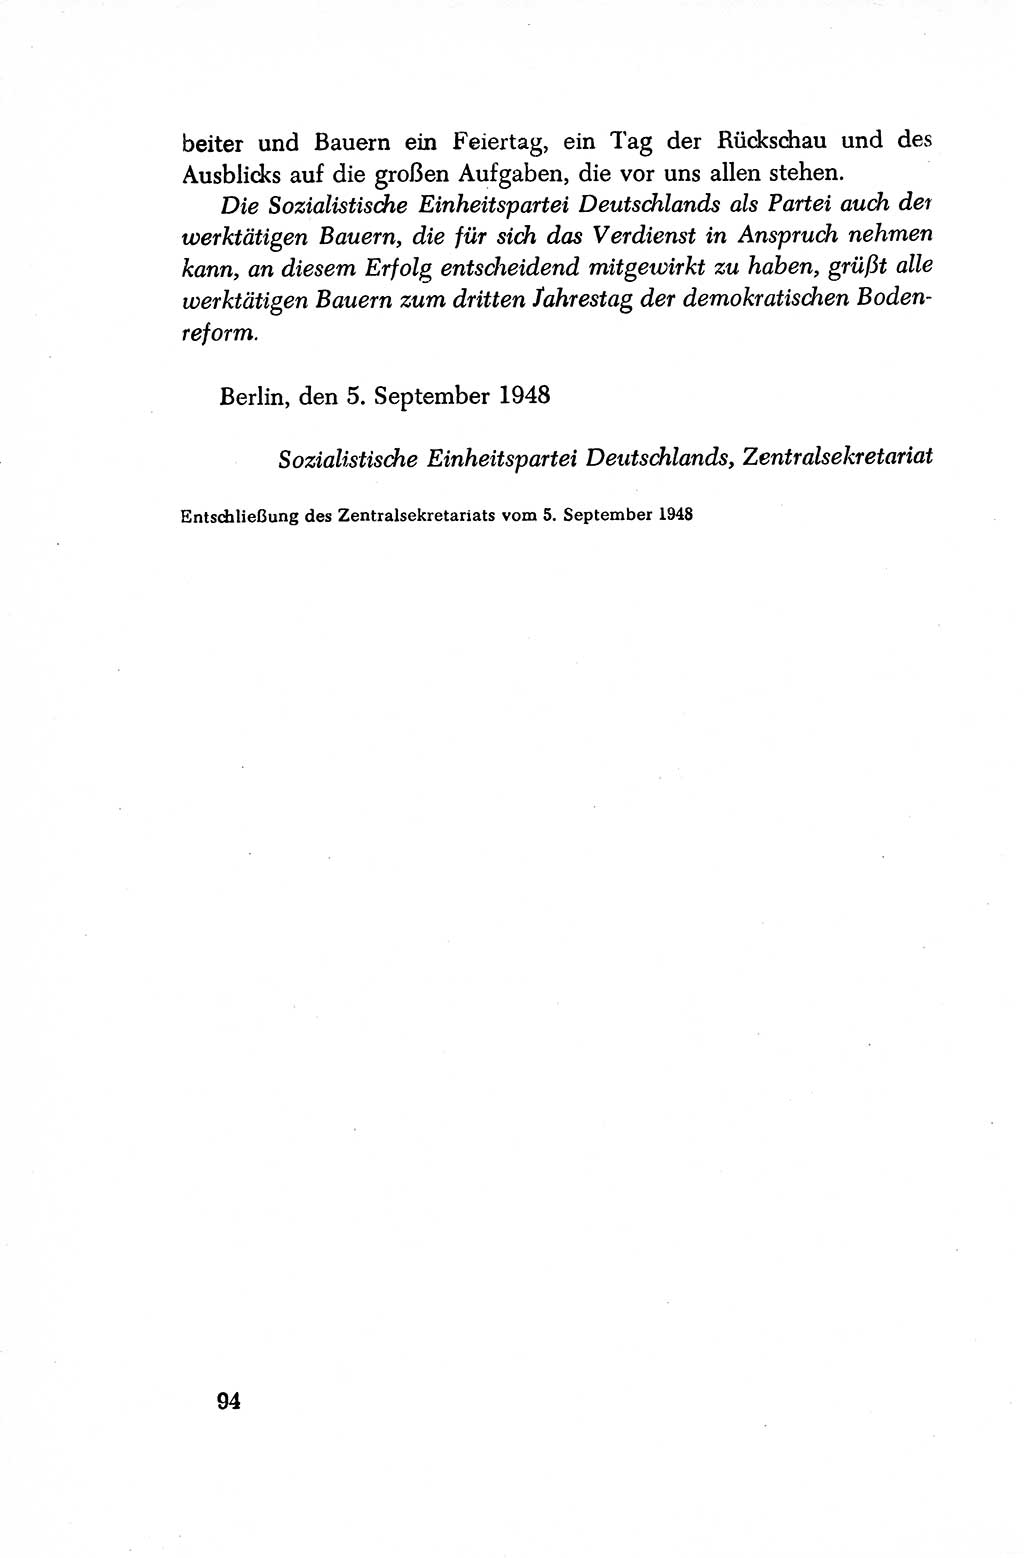 Dokumente der Sozialistischen Einheitspartei Deutschlands (SED) [Sowjetische Besatzungszone (SBZ) Deutschlands/Deutsche Demokratische Republik (DDR)] 1948-1950, Seite 94 (Dok. SED SBZ Dtl. DDR 1948-1950, S. 94)